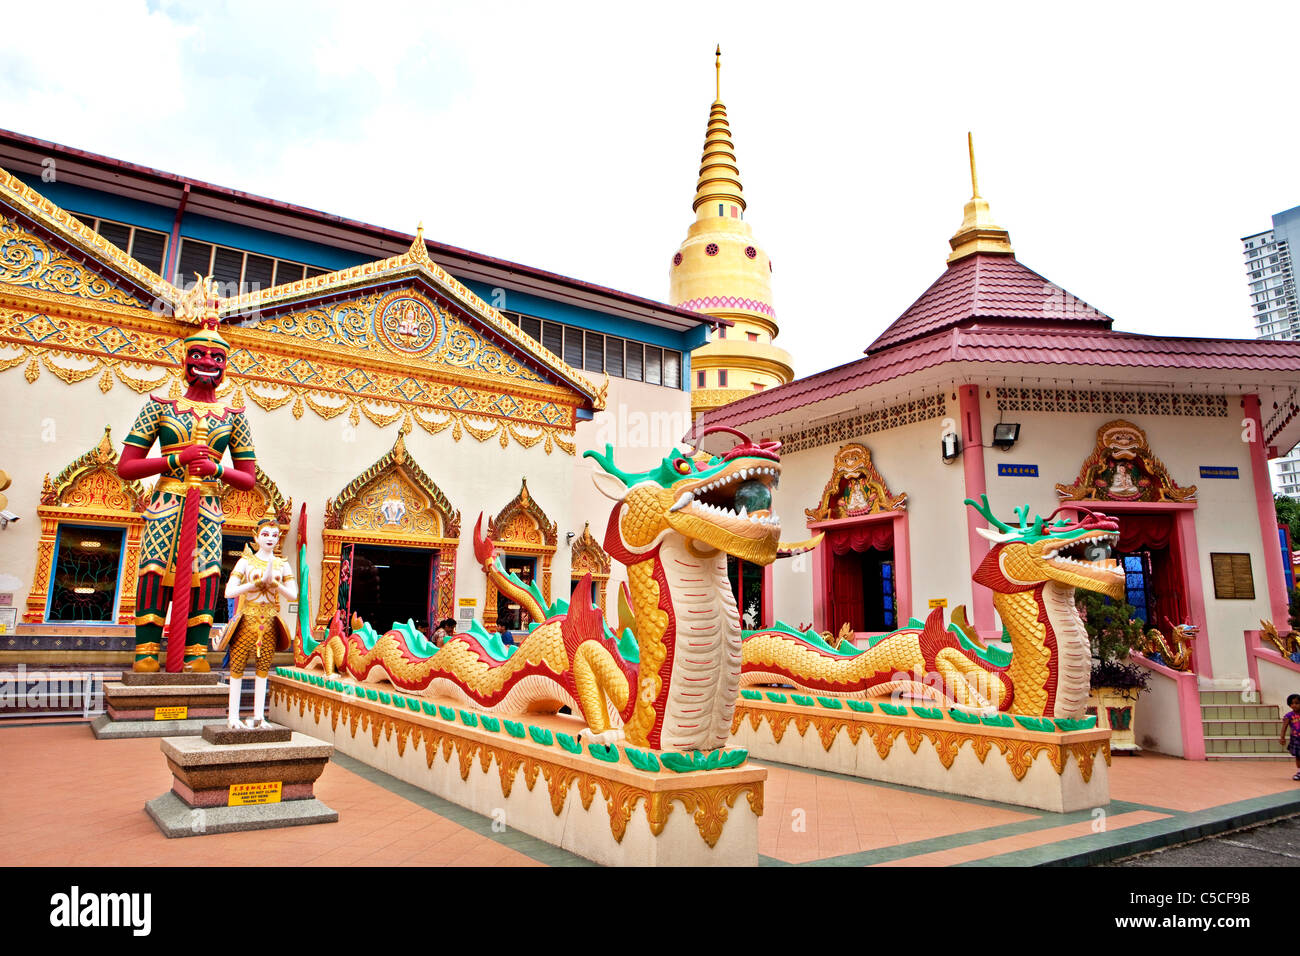 Great snakes guarding the entrance to Thai temple, Wat Chayamangkalaram, Penang, Malaysia Stock Photo